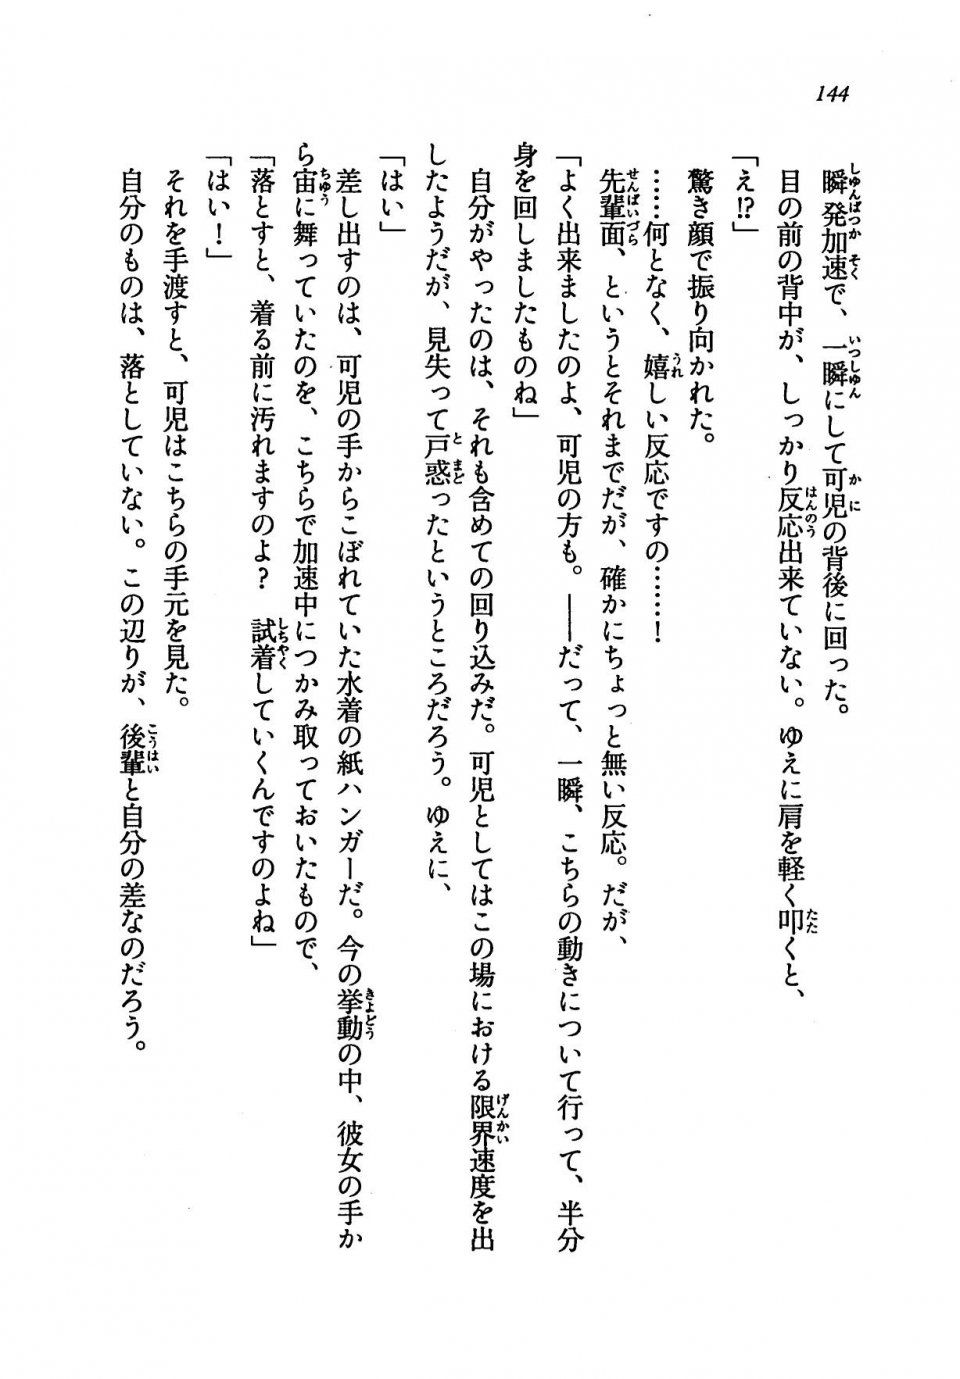 Kyoukai Senjou no Horizon LN Vol 19(8A) - Photo #144